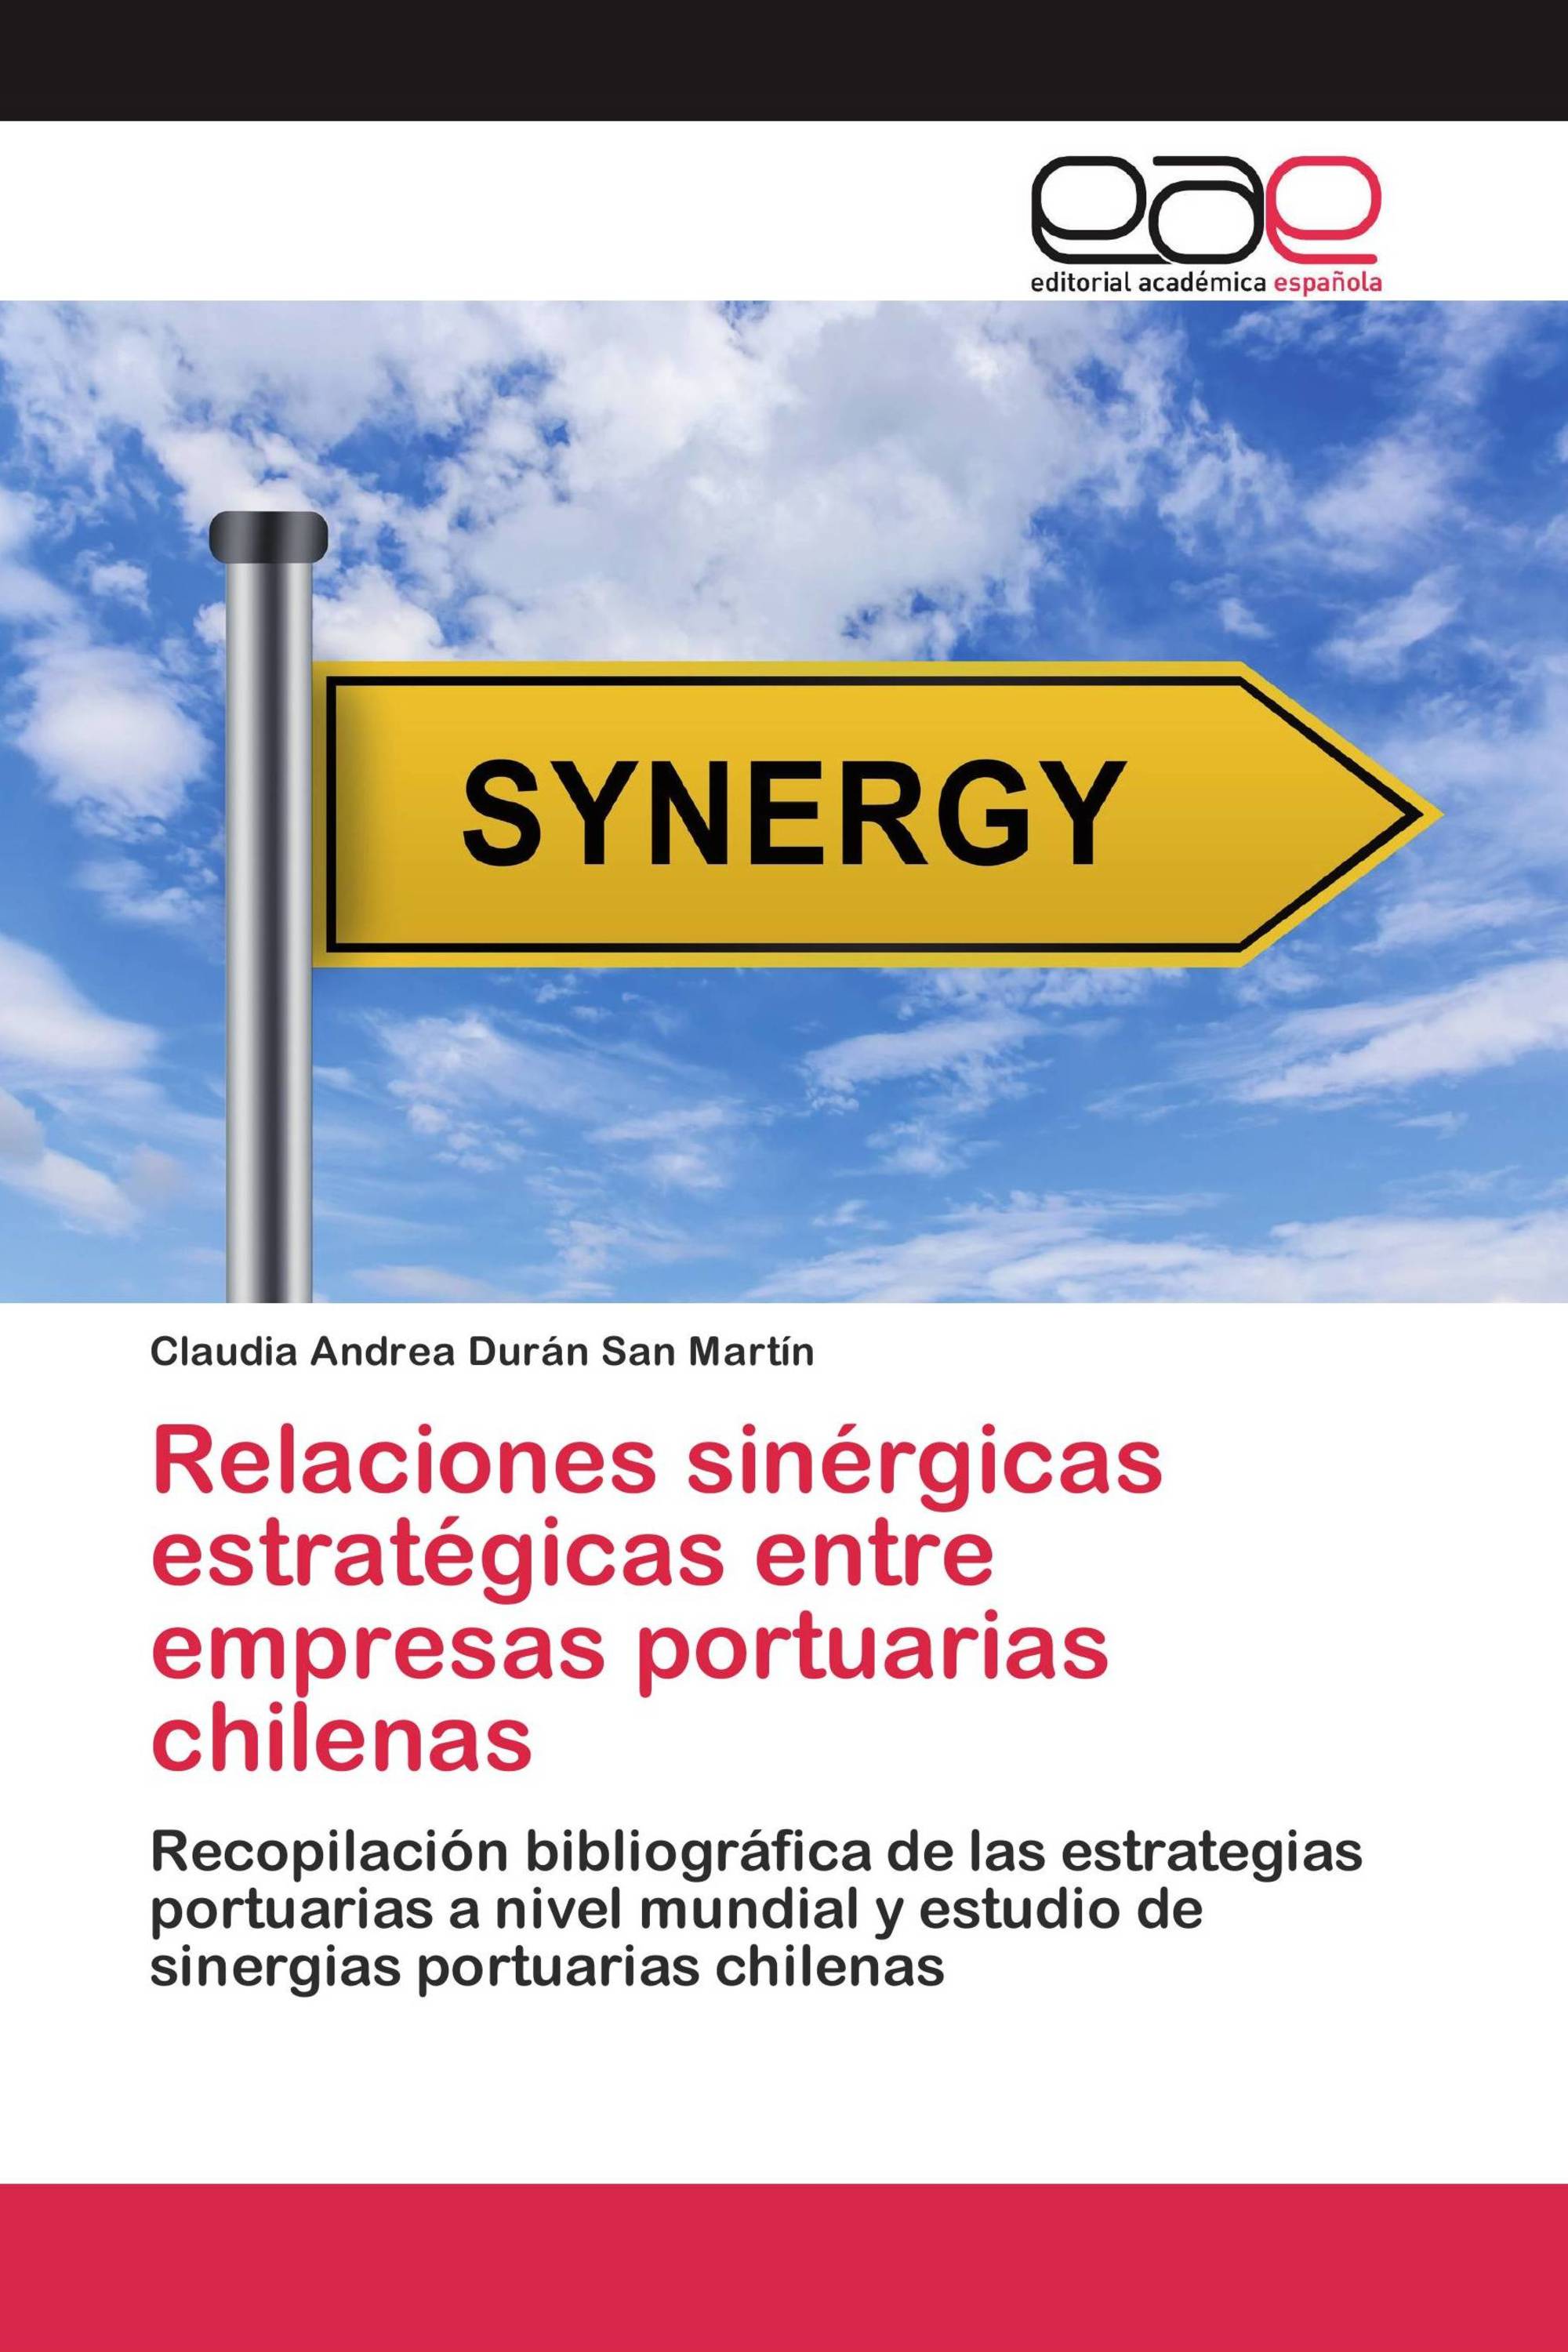 Relaciones sinérgicas estratégicas entre empresas portuarias chilenas